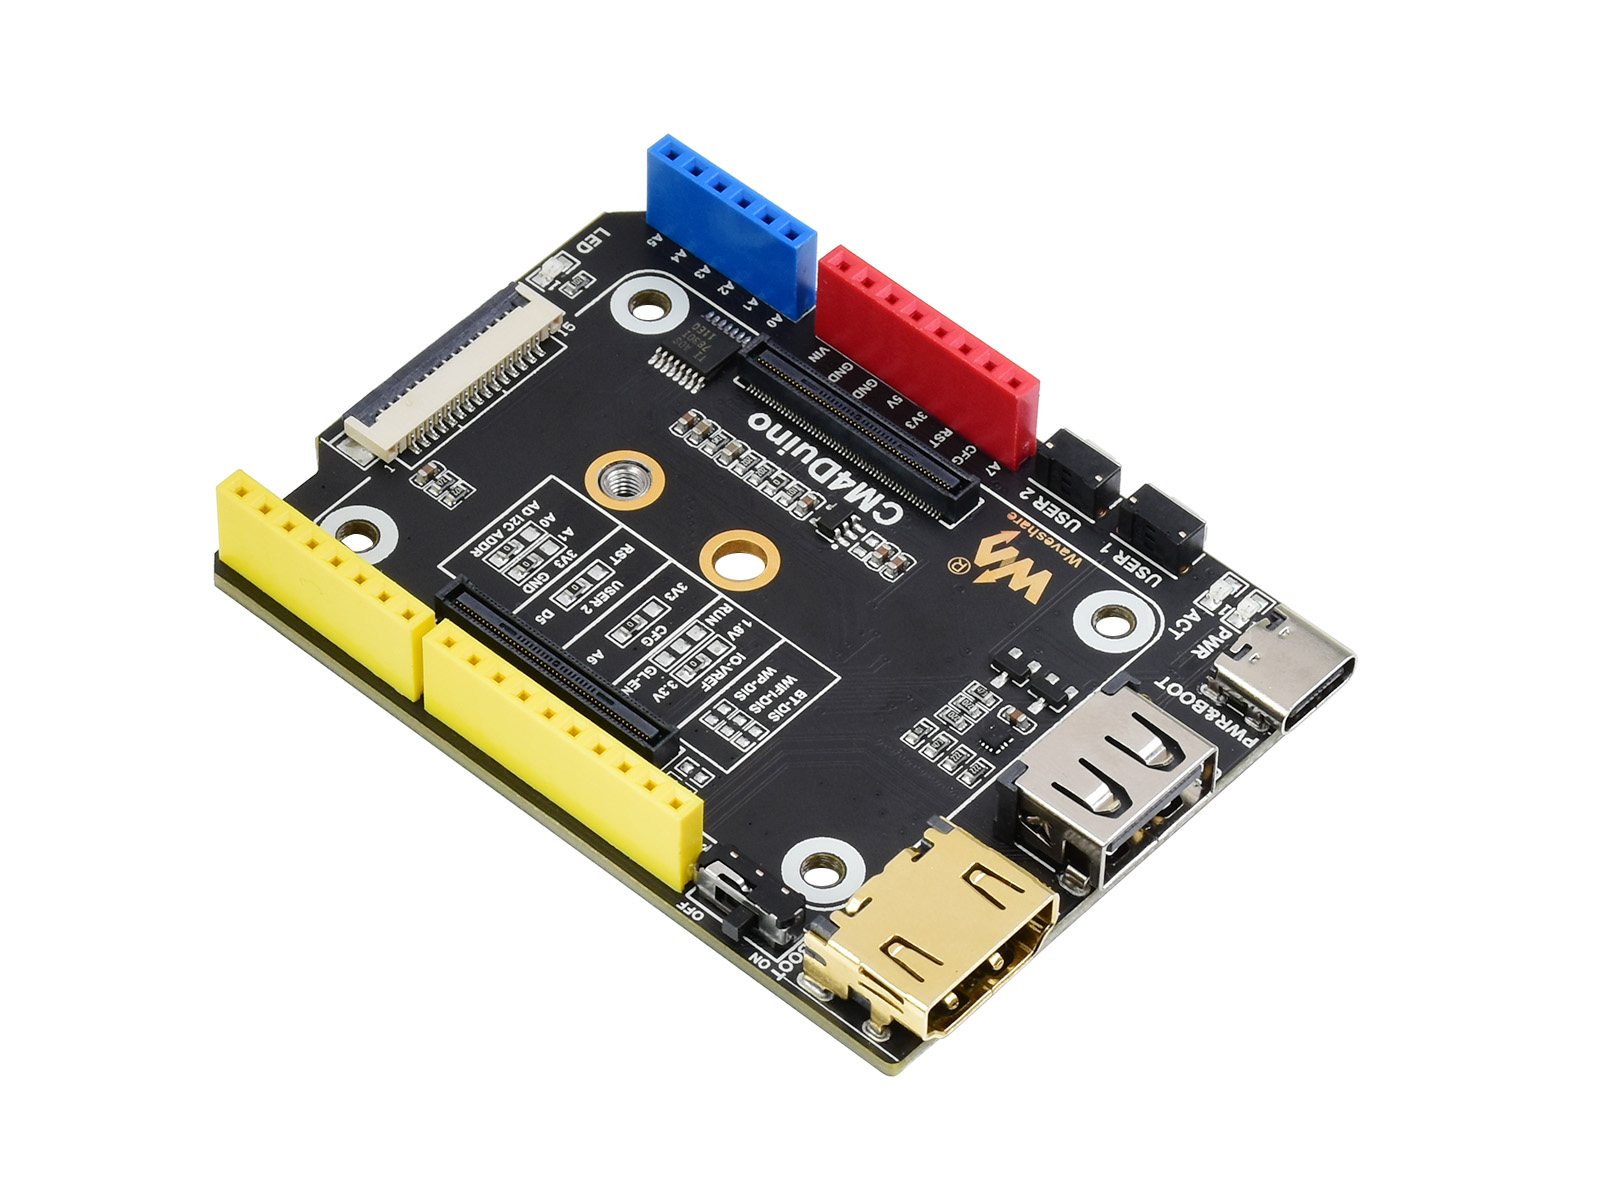 Arduino Compatible Base Board For Raspberry Pi Compute Module 4, HDMI, USB,  M.2 Slot